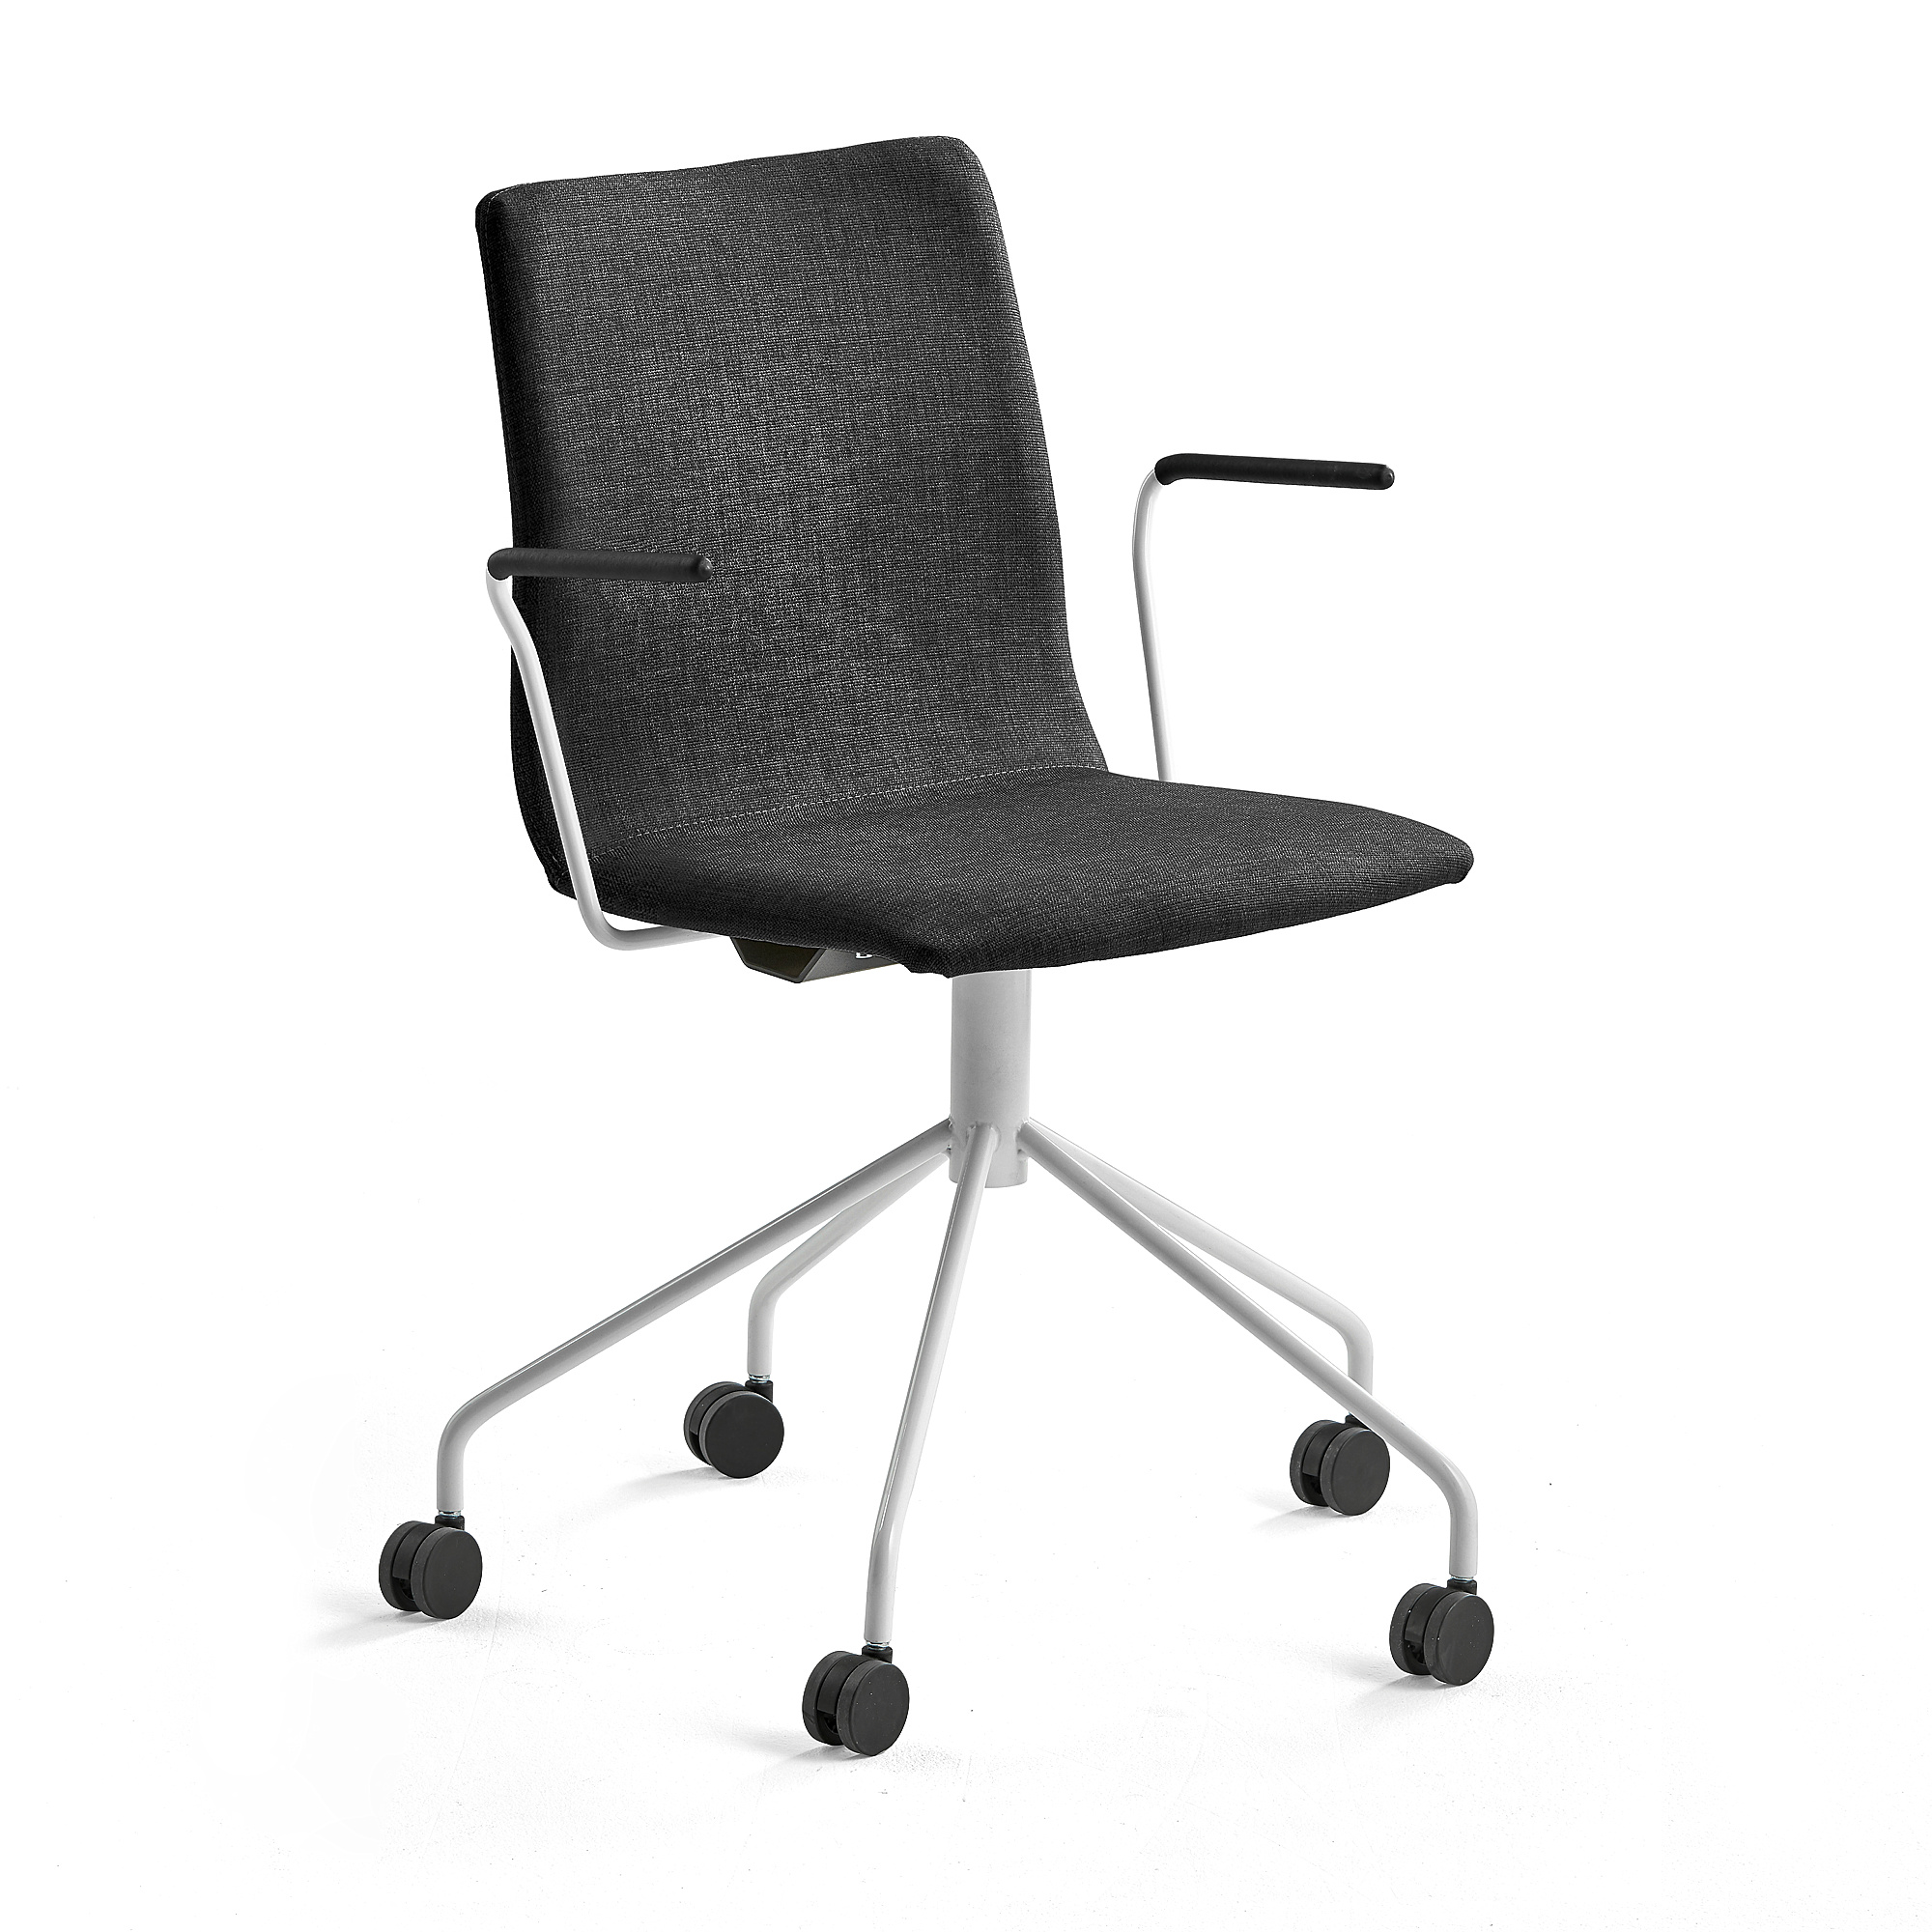 Konferenčná stolička OTTAWA, s kolieskami a opierkami rúk, čierna, biela